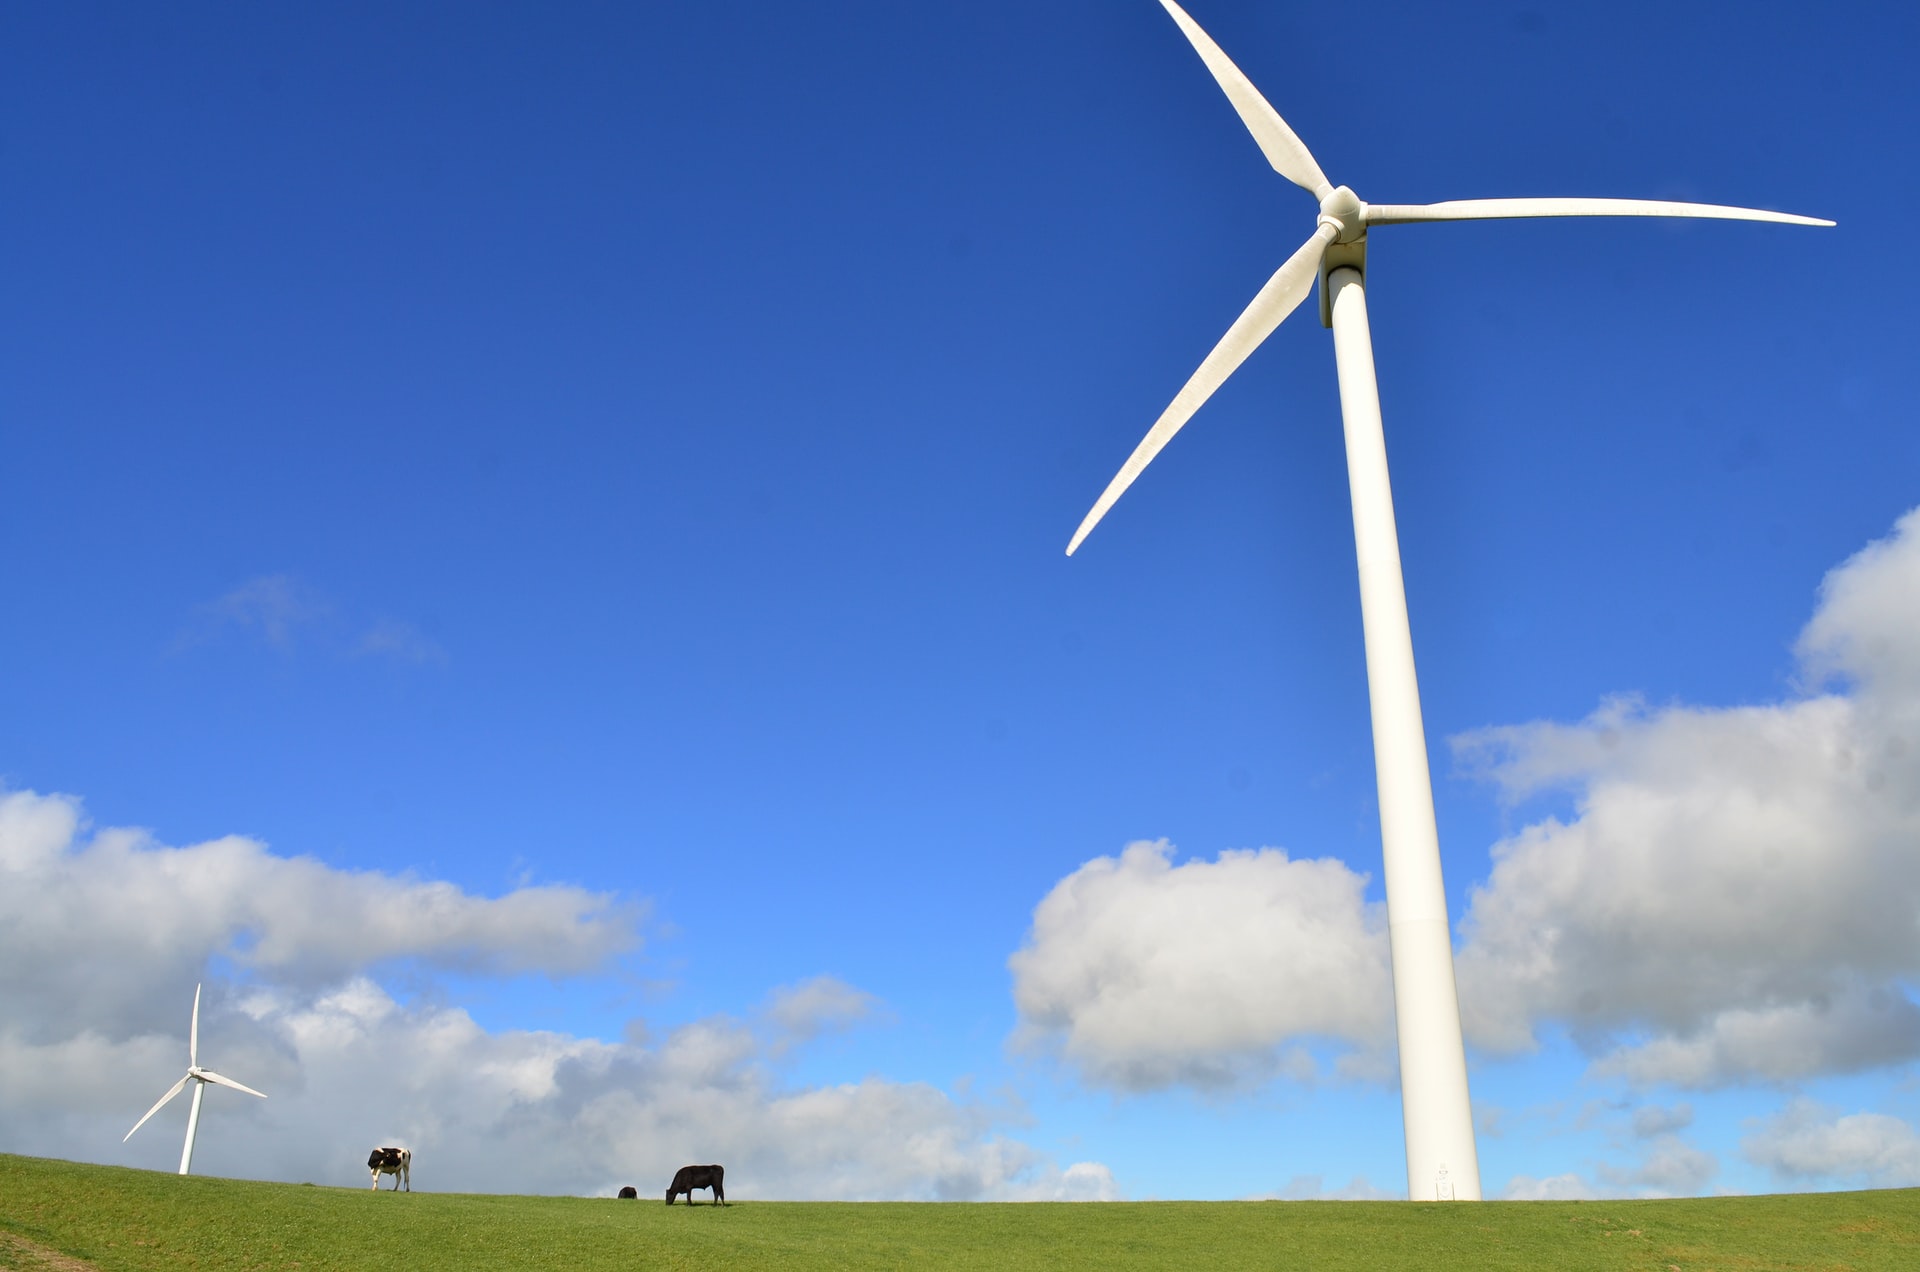 デンマークの風力発電を見習い 自国の状況に合わせた発電が必要